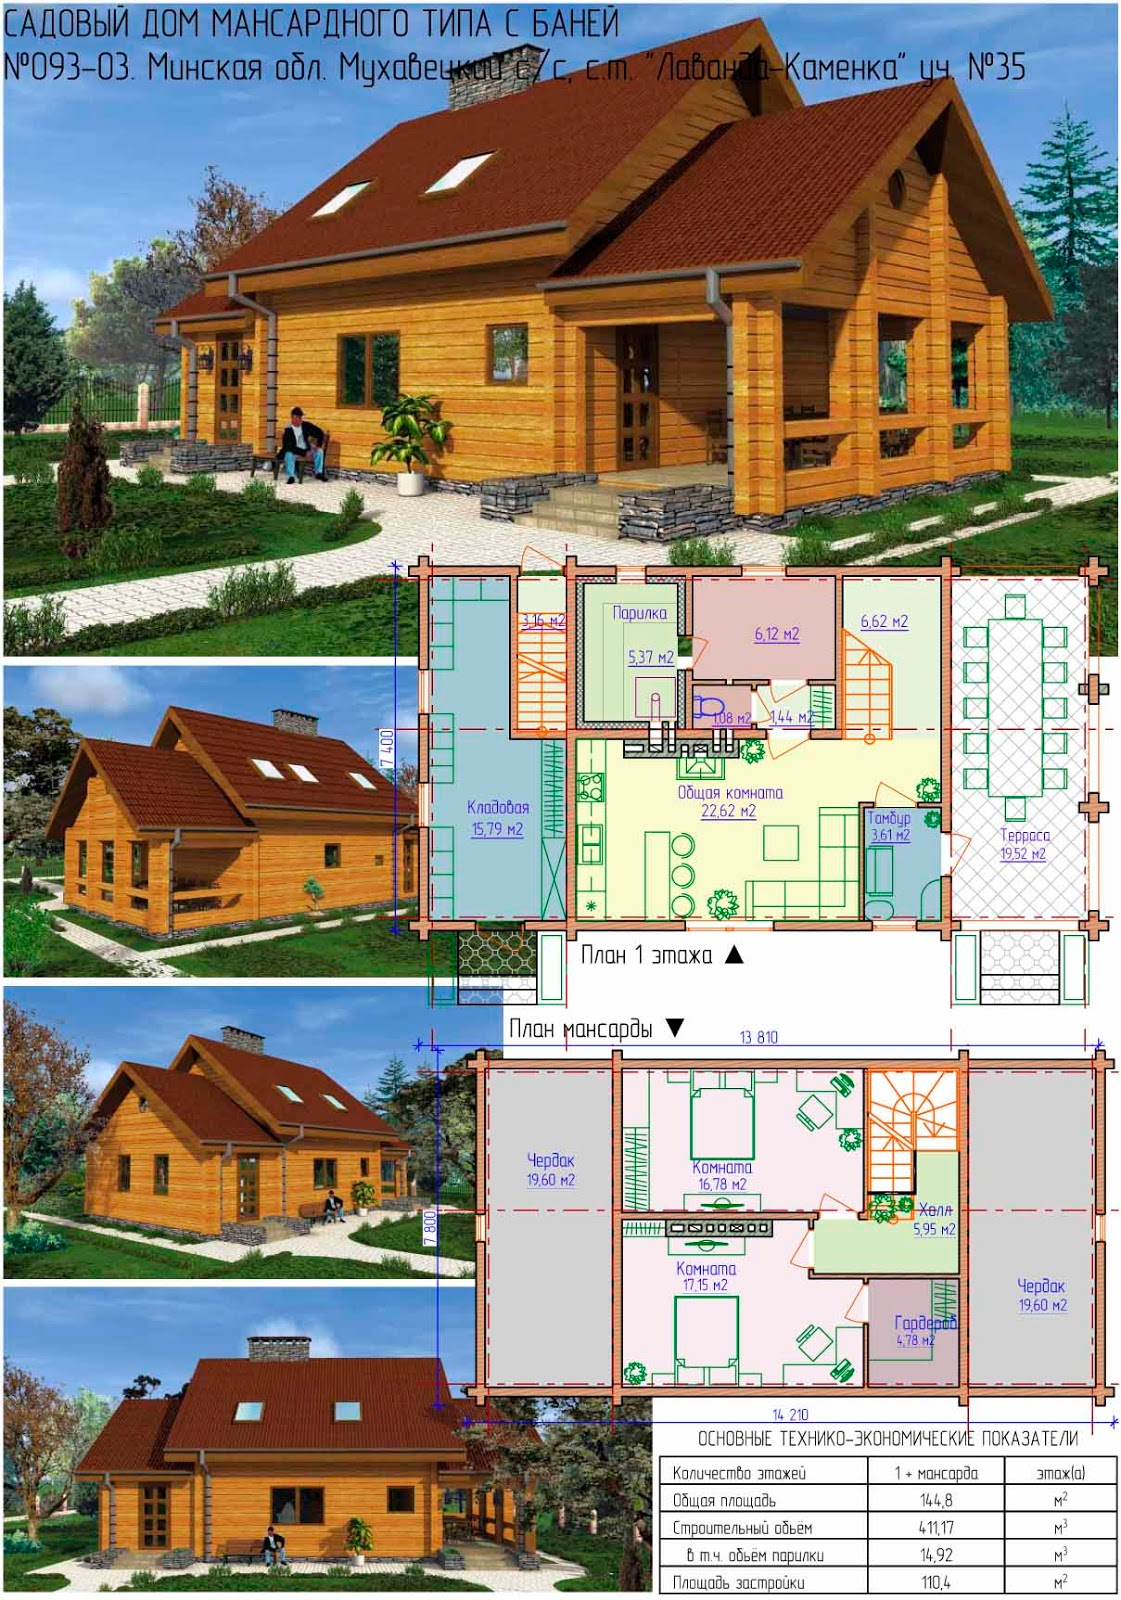 Дом баня: варианты проектов дома с баней под одной крышей, анализ преимуществ и недостатков, советы по строительству